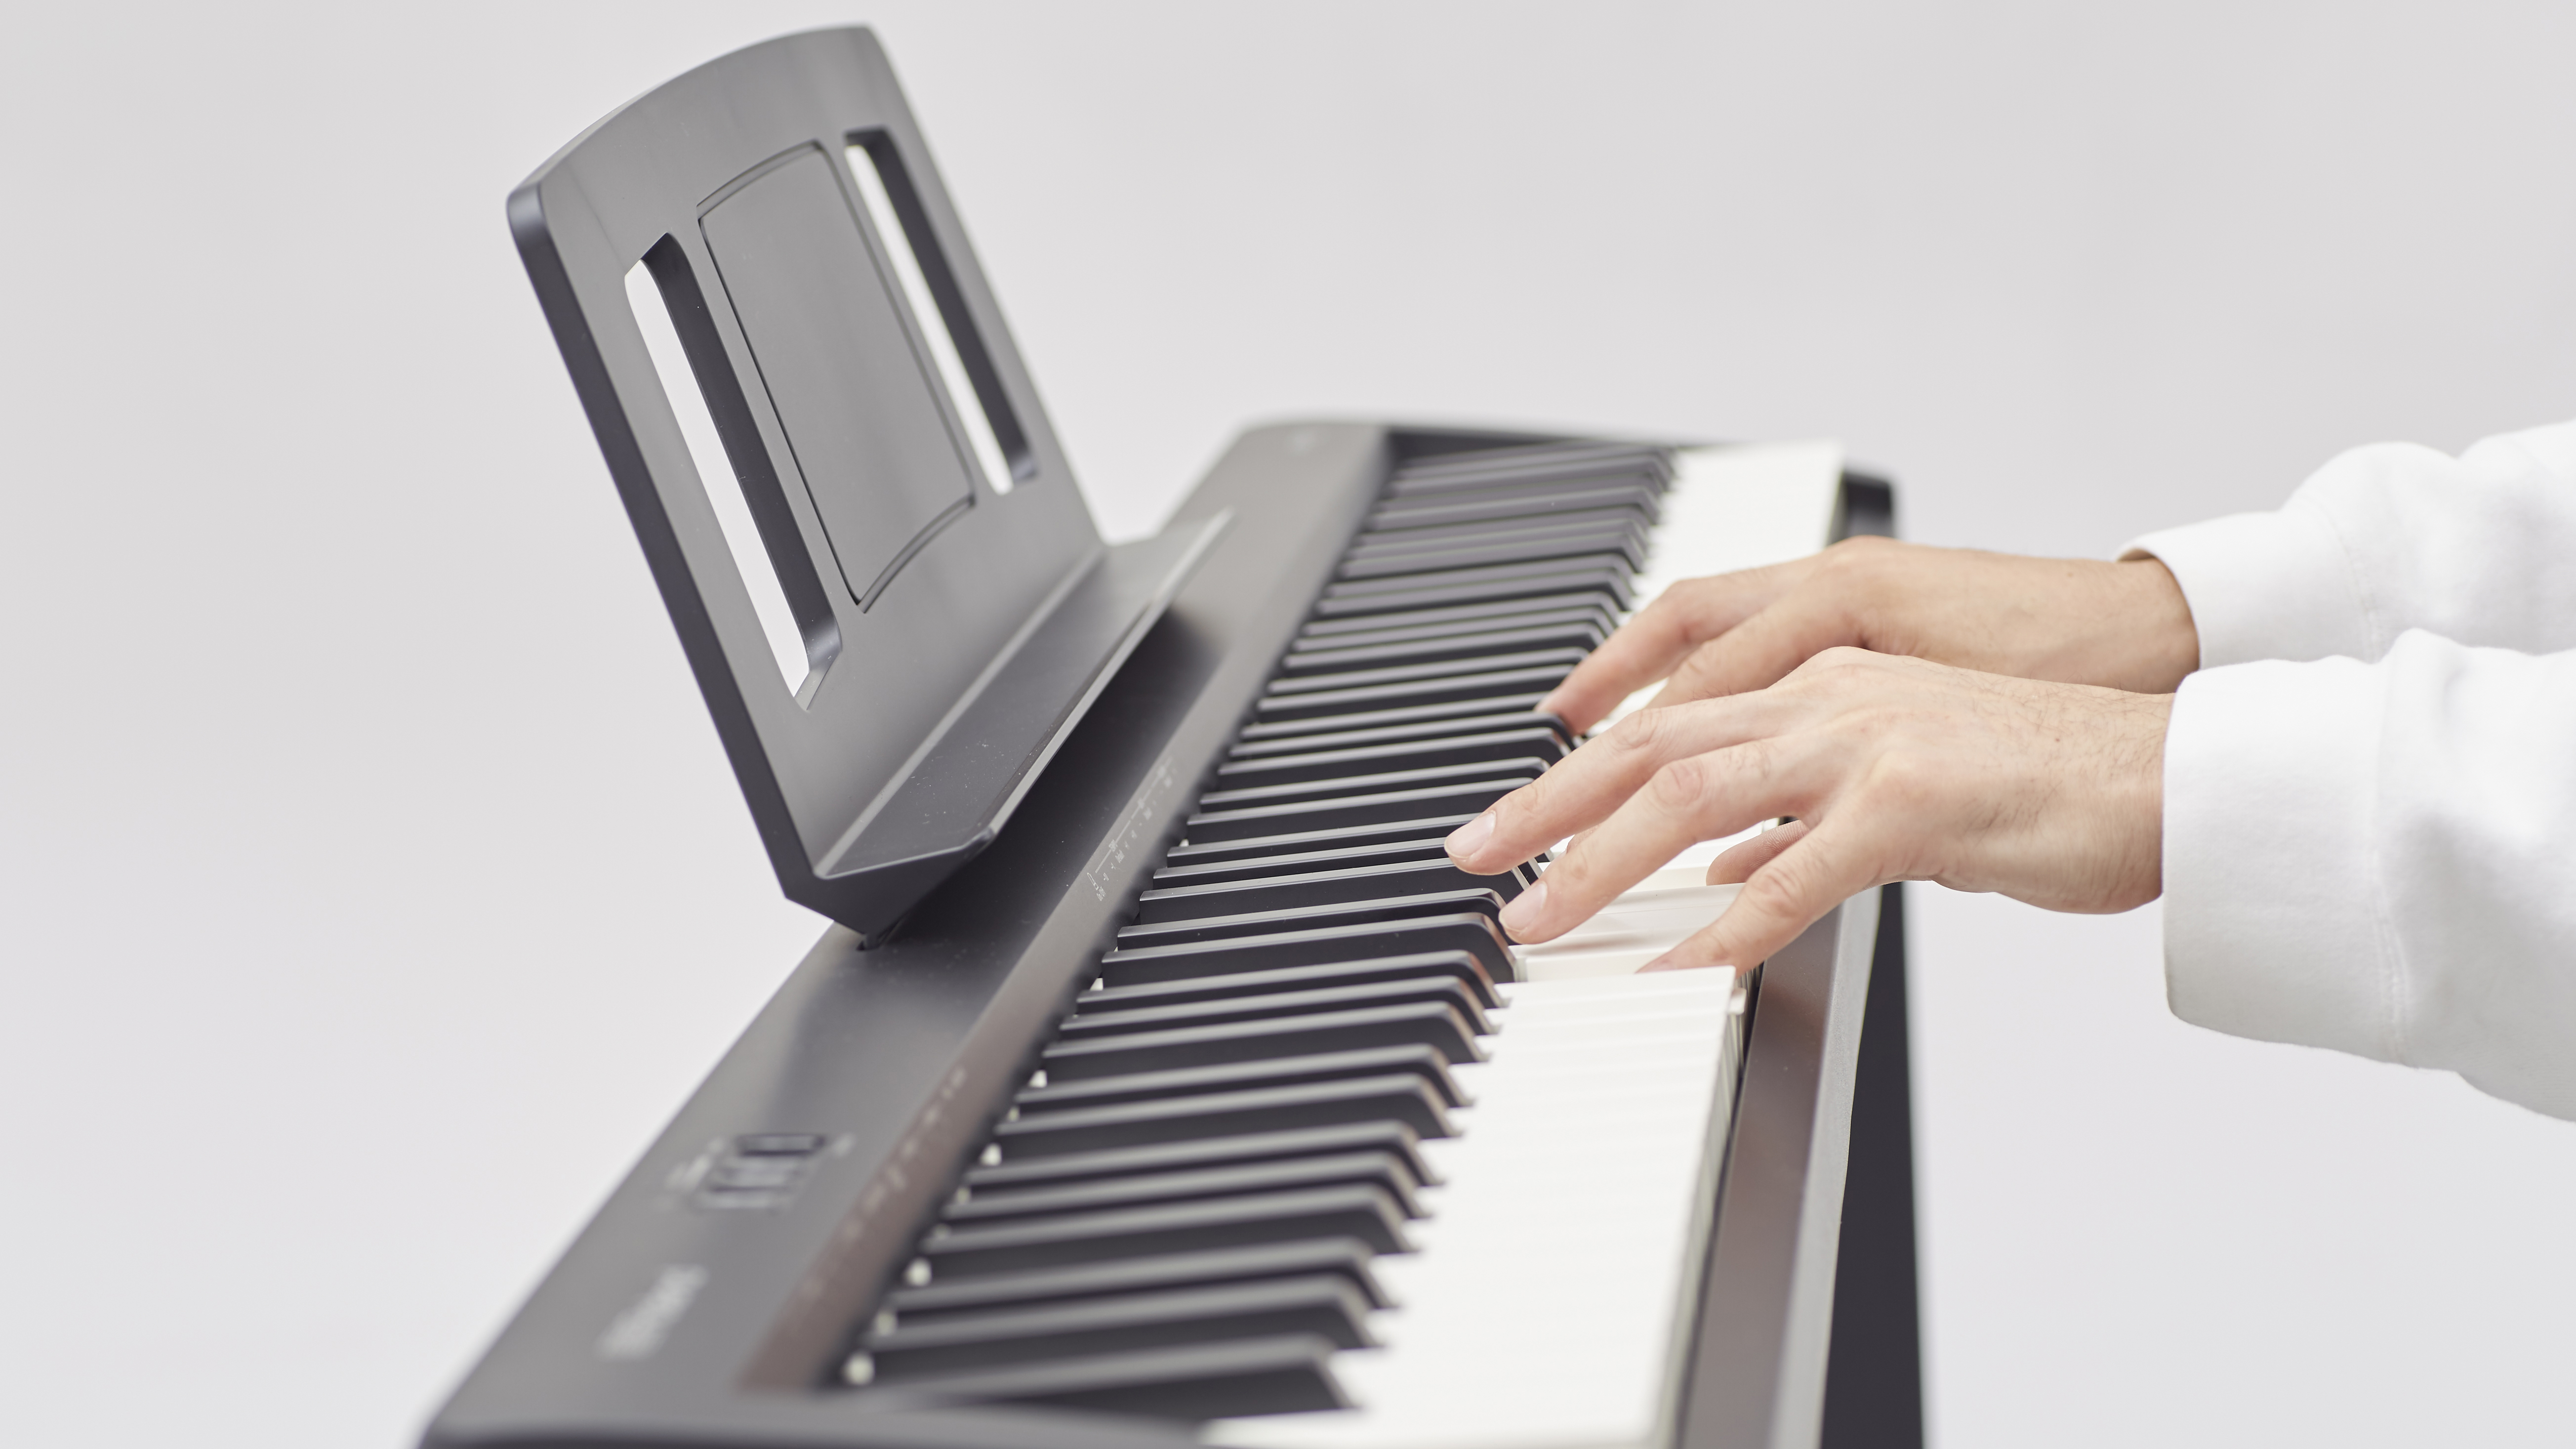 pomp Isolator Farmacologie Roland FP-10 Digital Piano review | MusicRadar